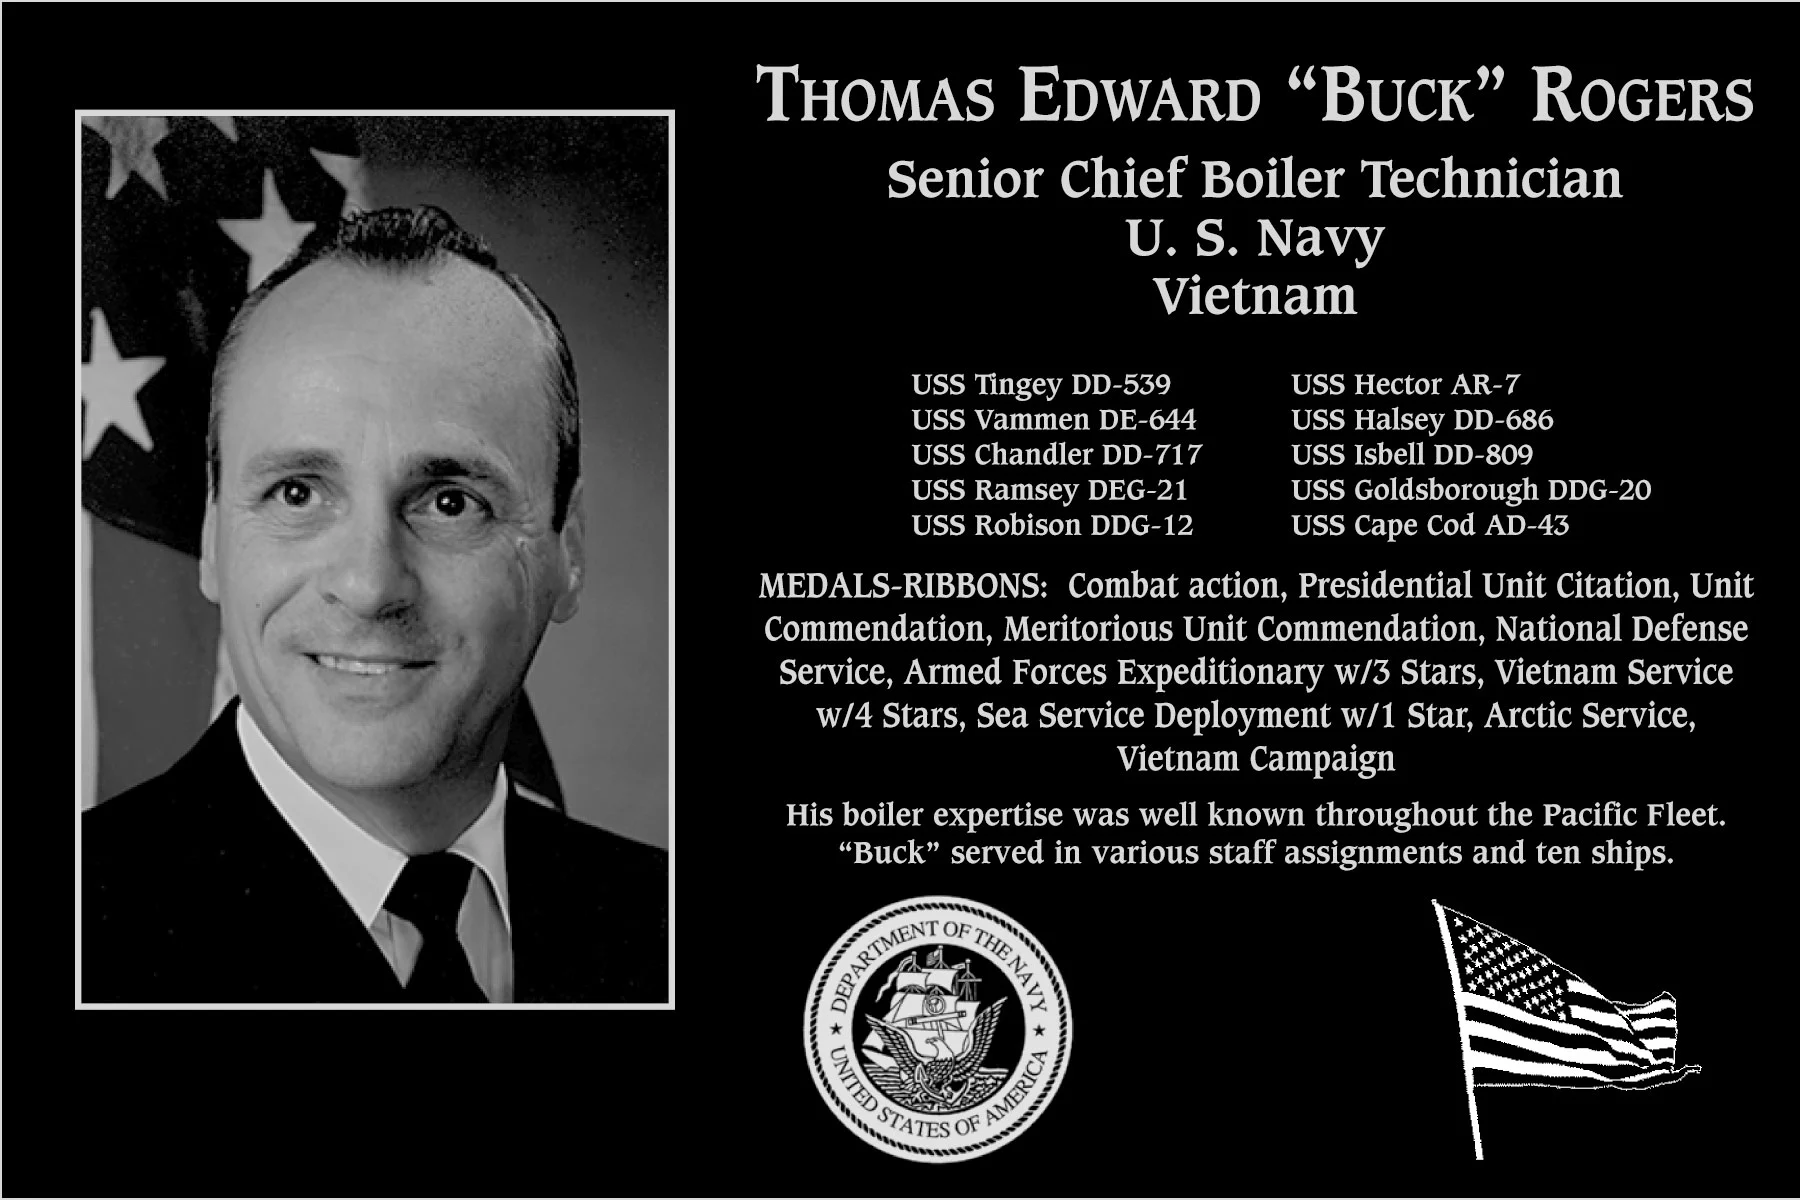 Thomas Edward “Buck” Rogers